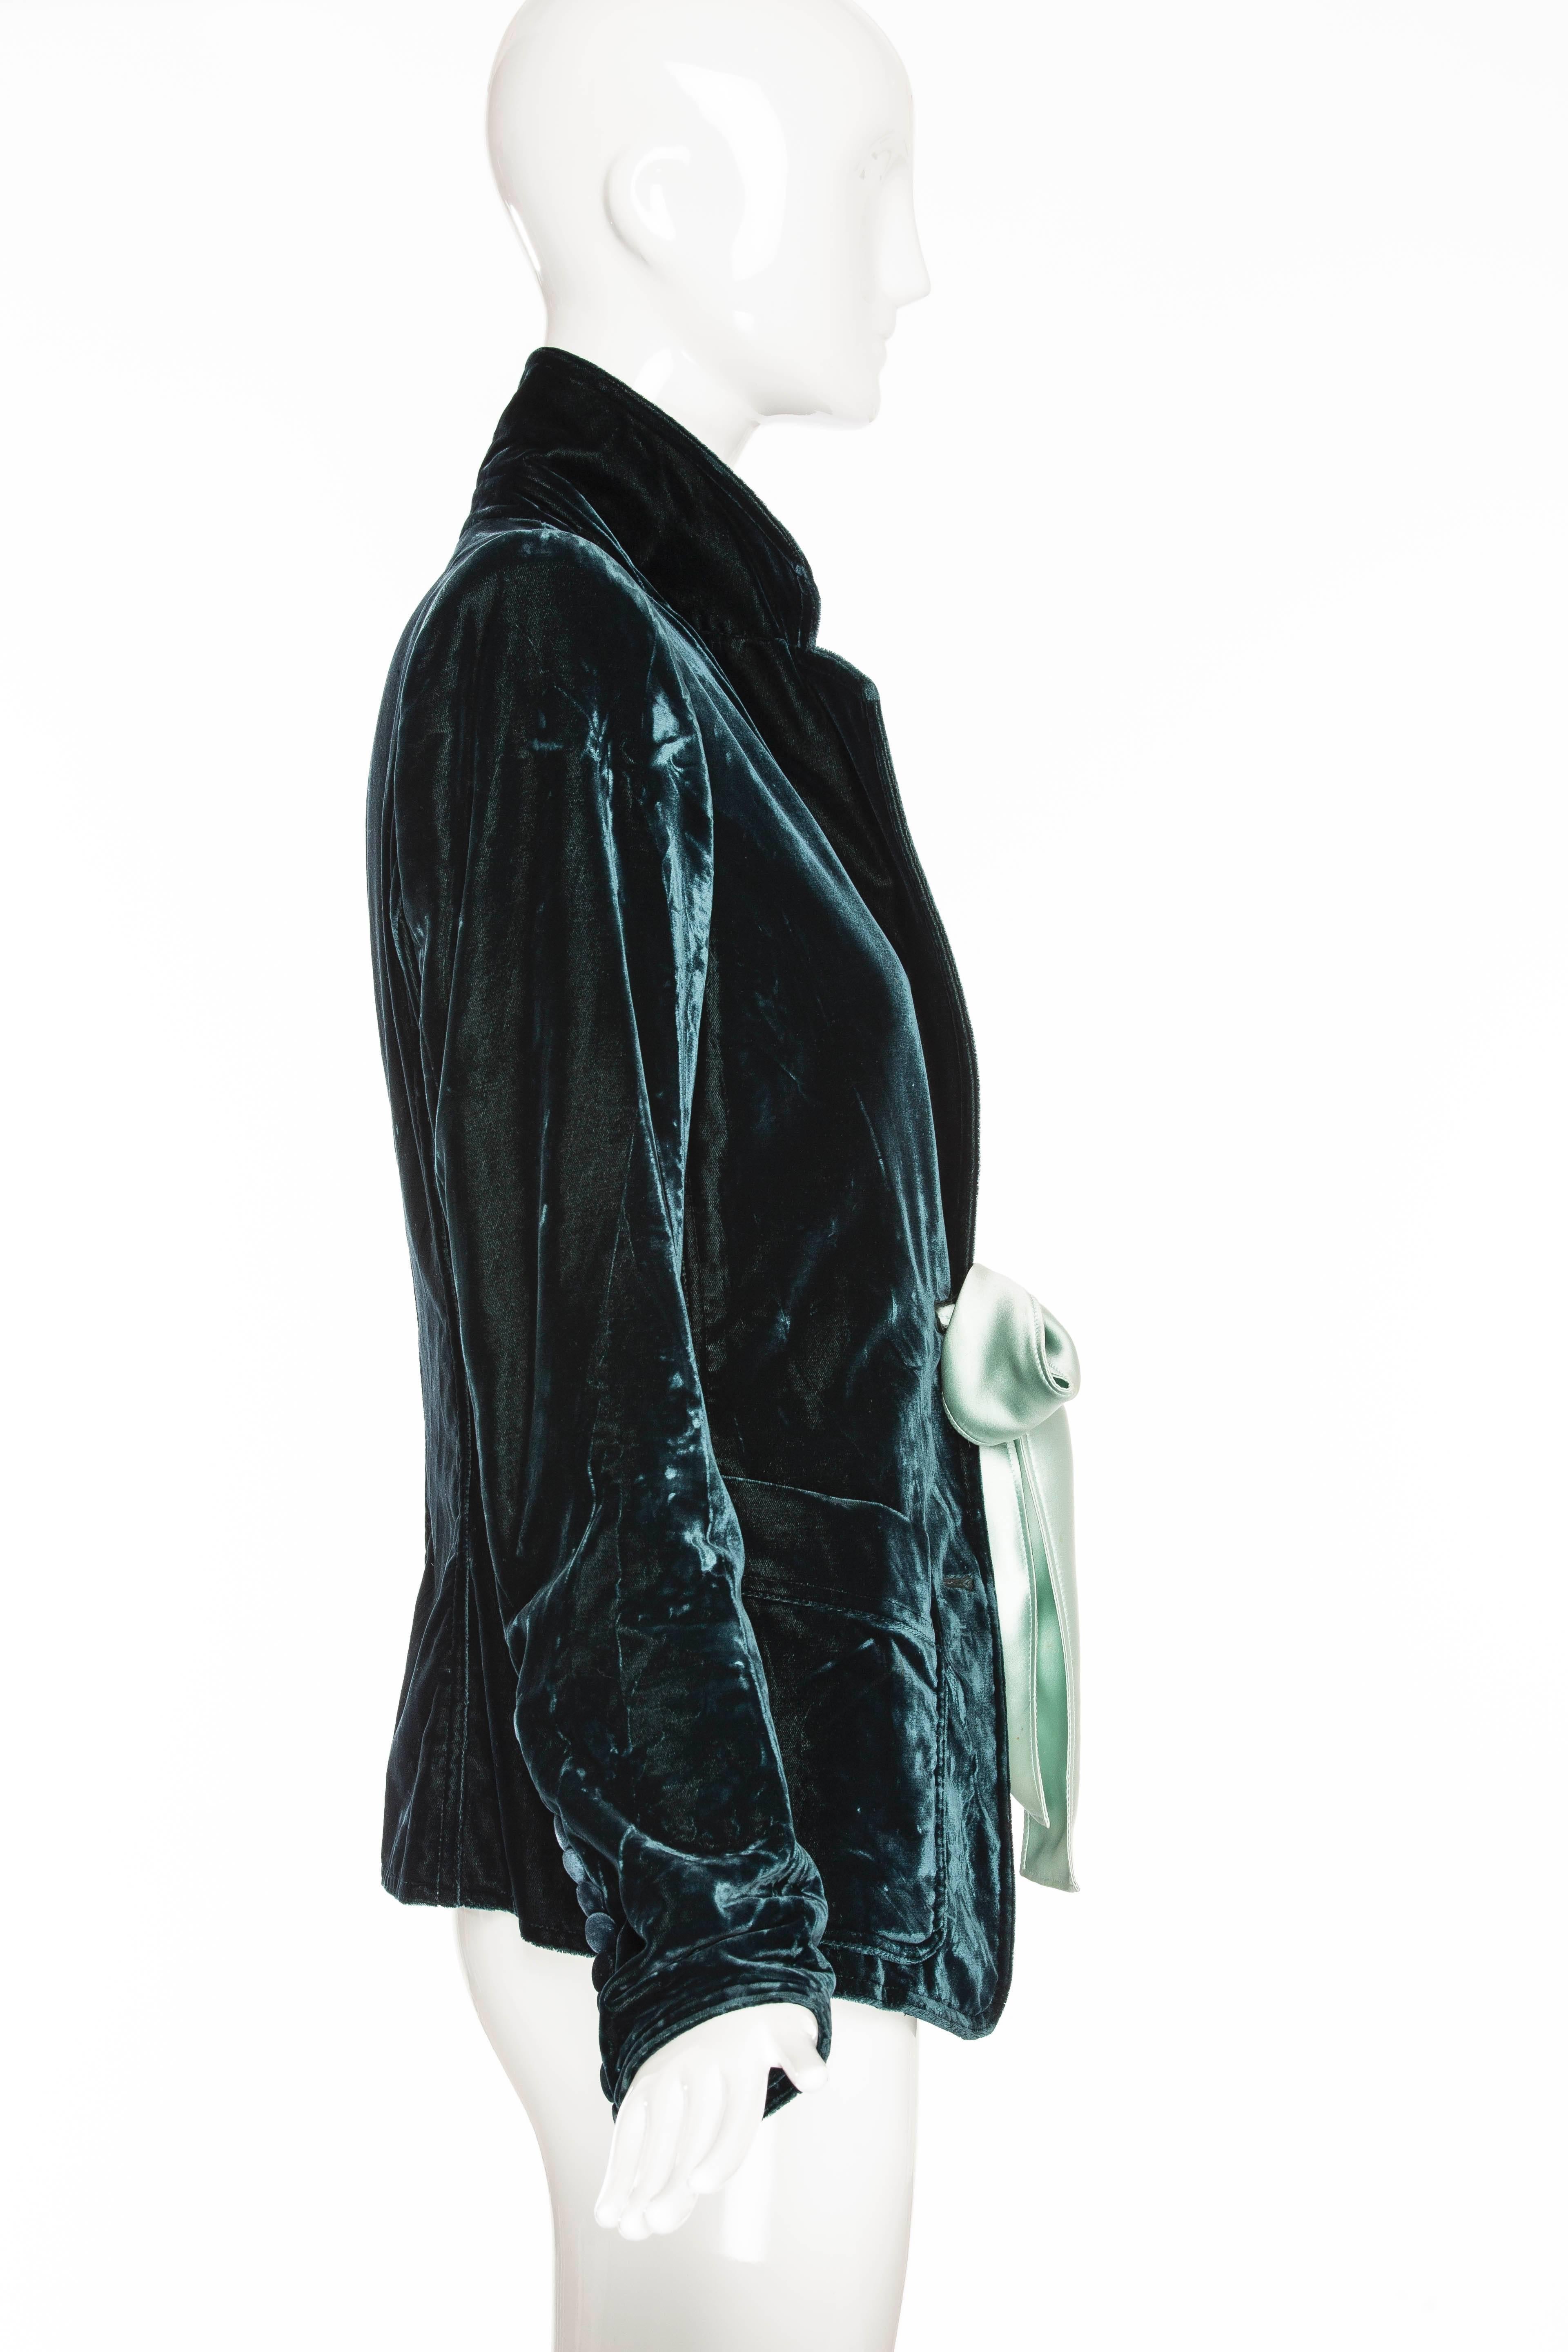 Black Tom Ford for Yves Saint Laurent Velvet Blazer Fall 2003